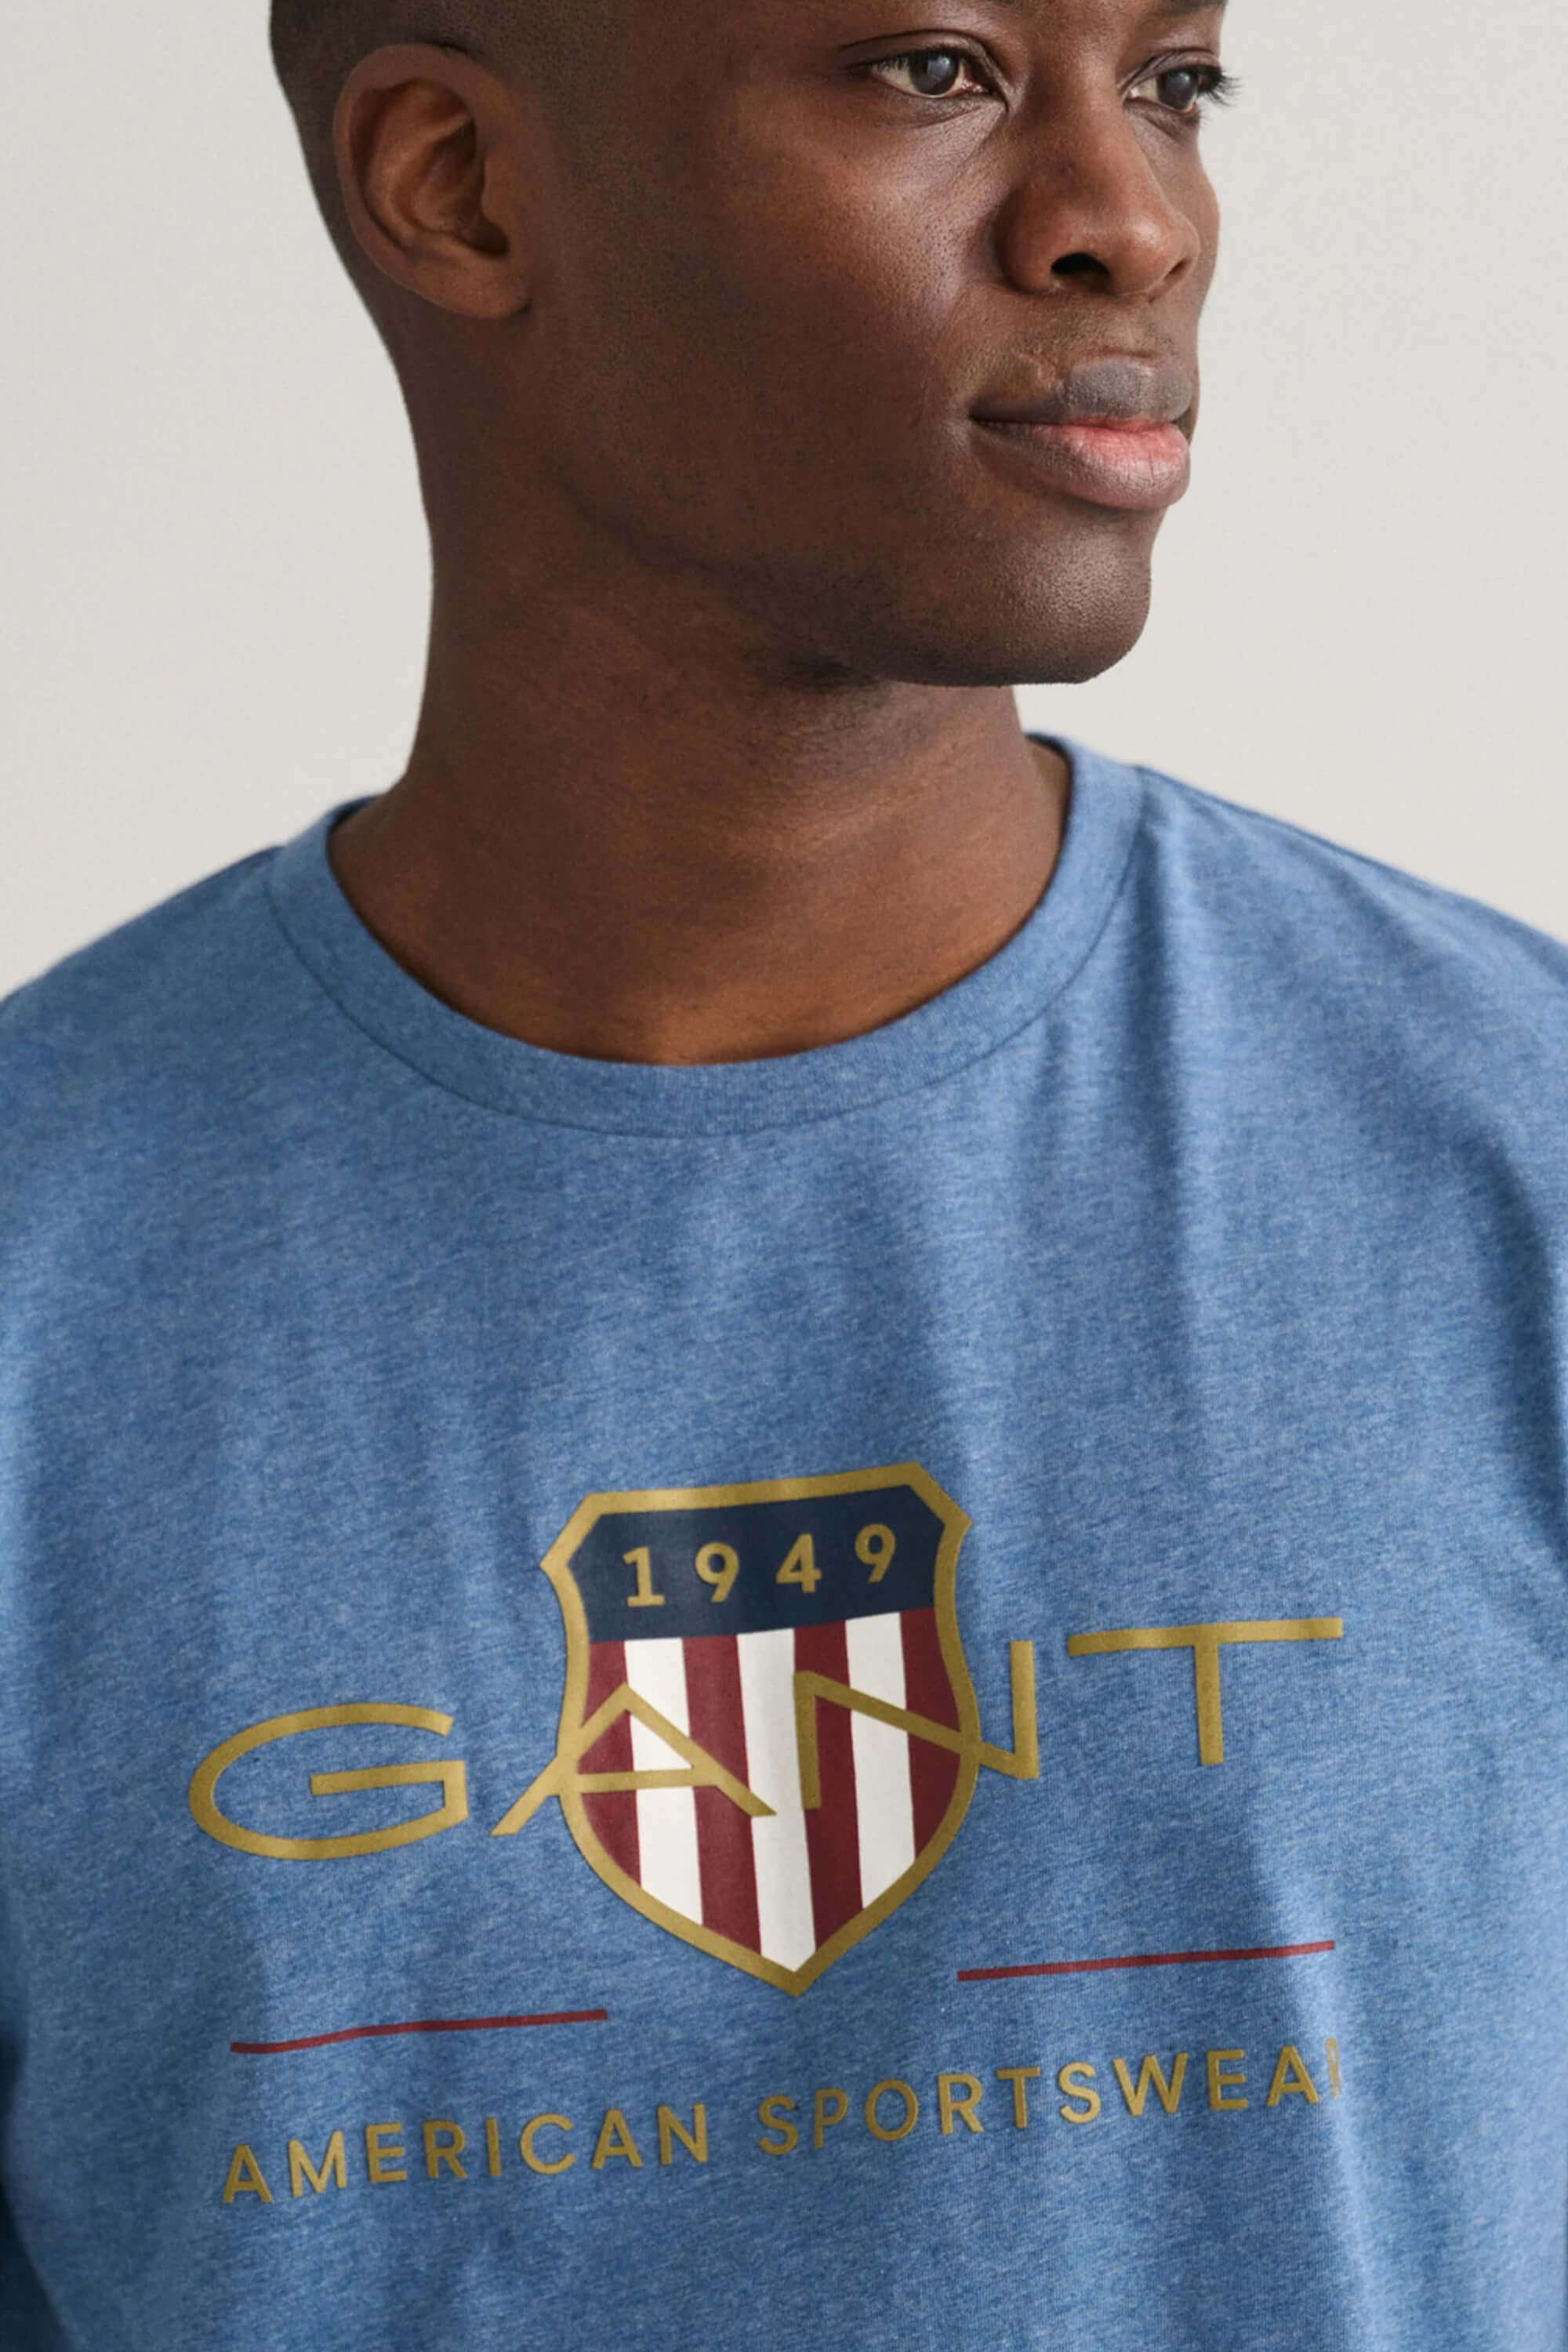 Gant Archive Shield T-Shirt Denim Blue